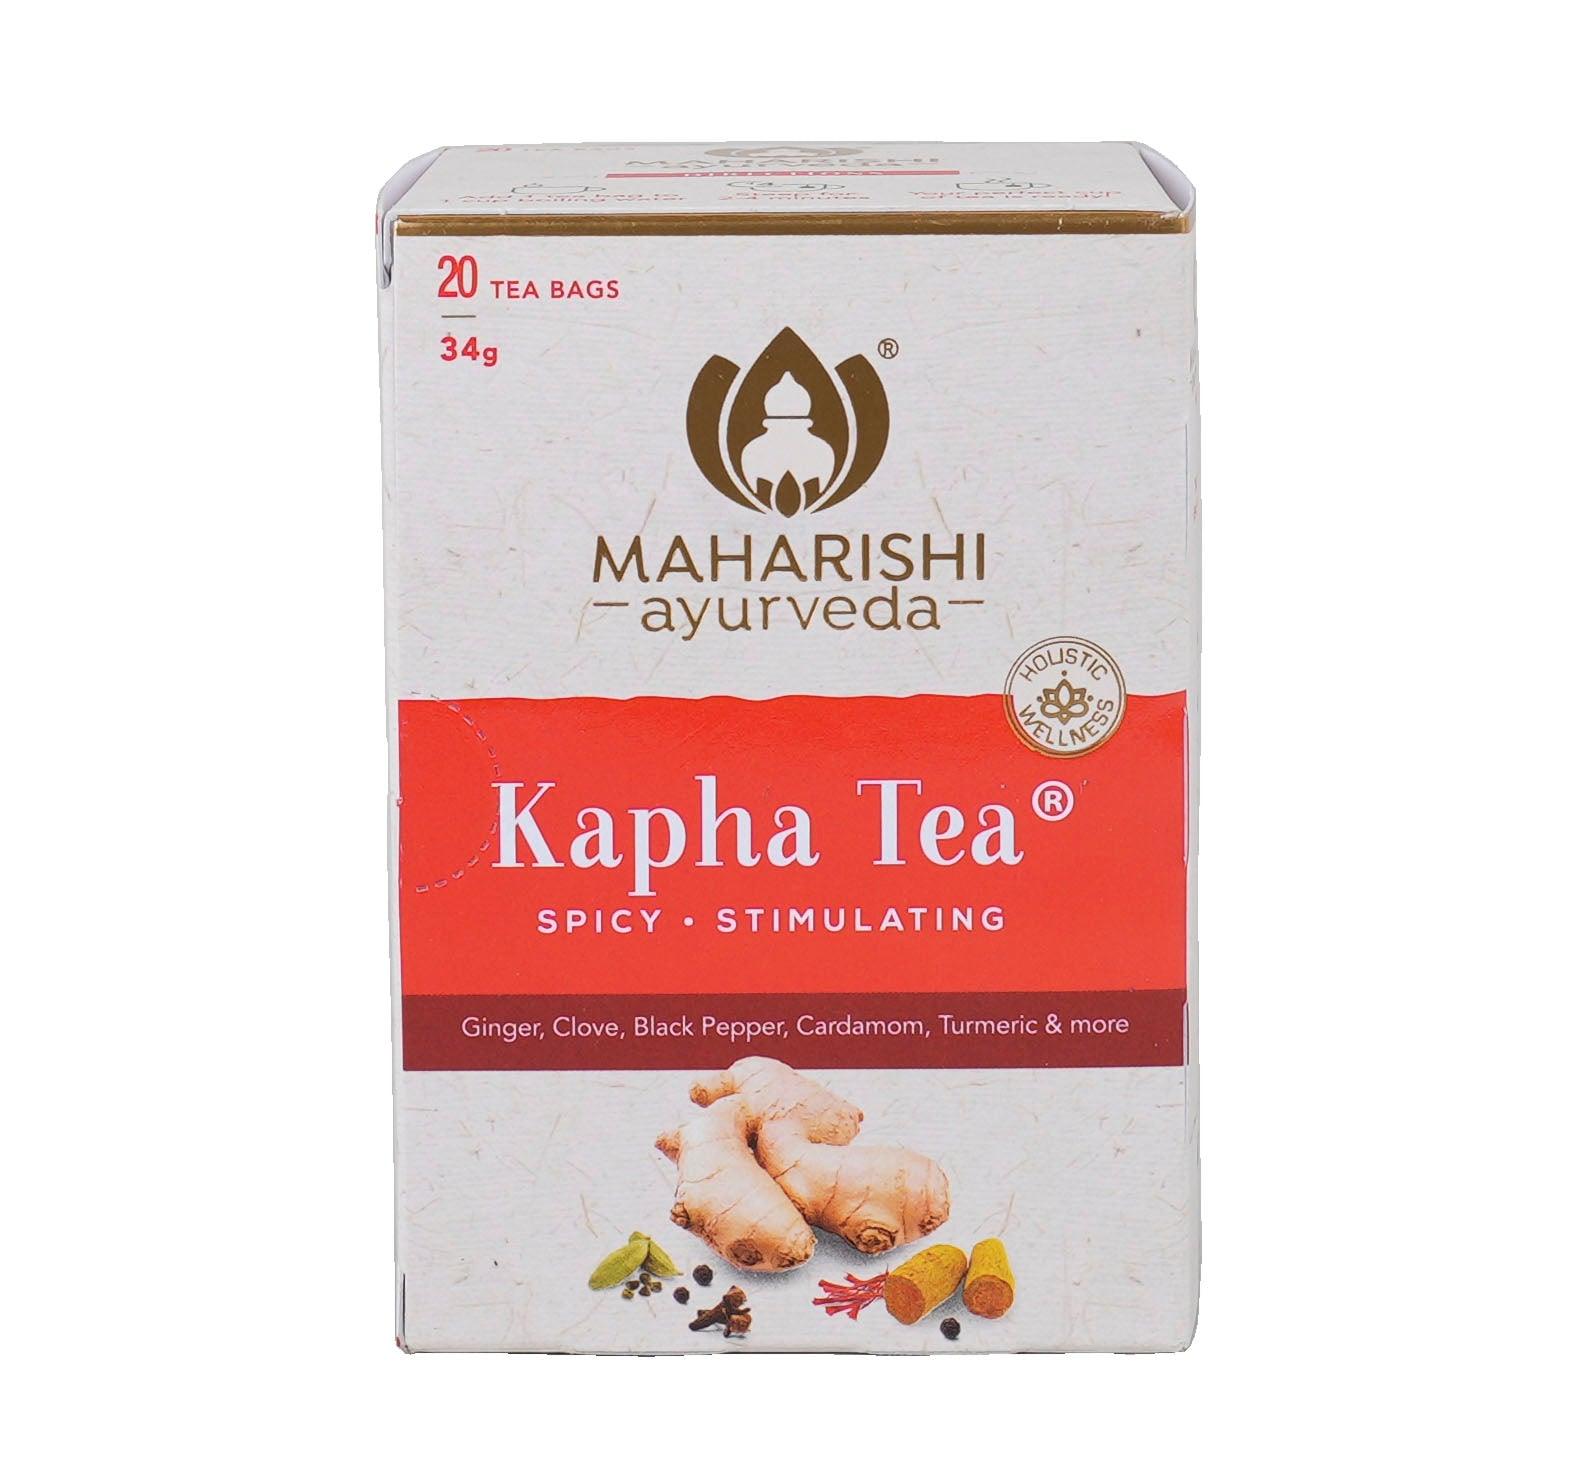 Kapha Tea 20 tea bags - Holy Sanity 